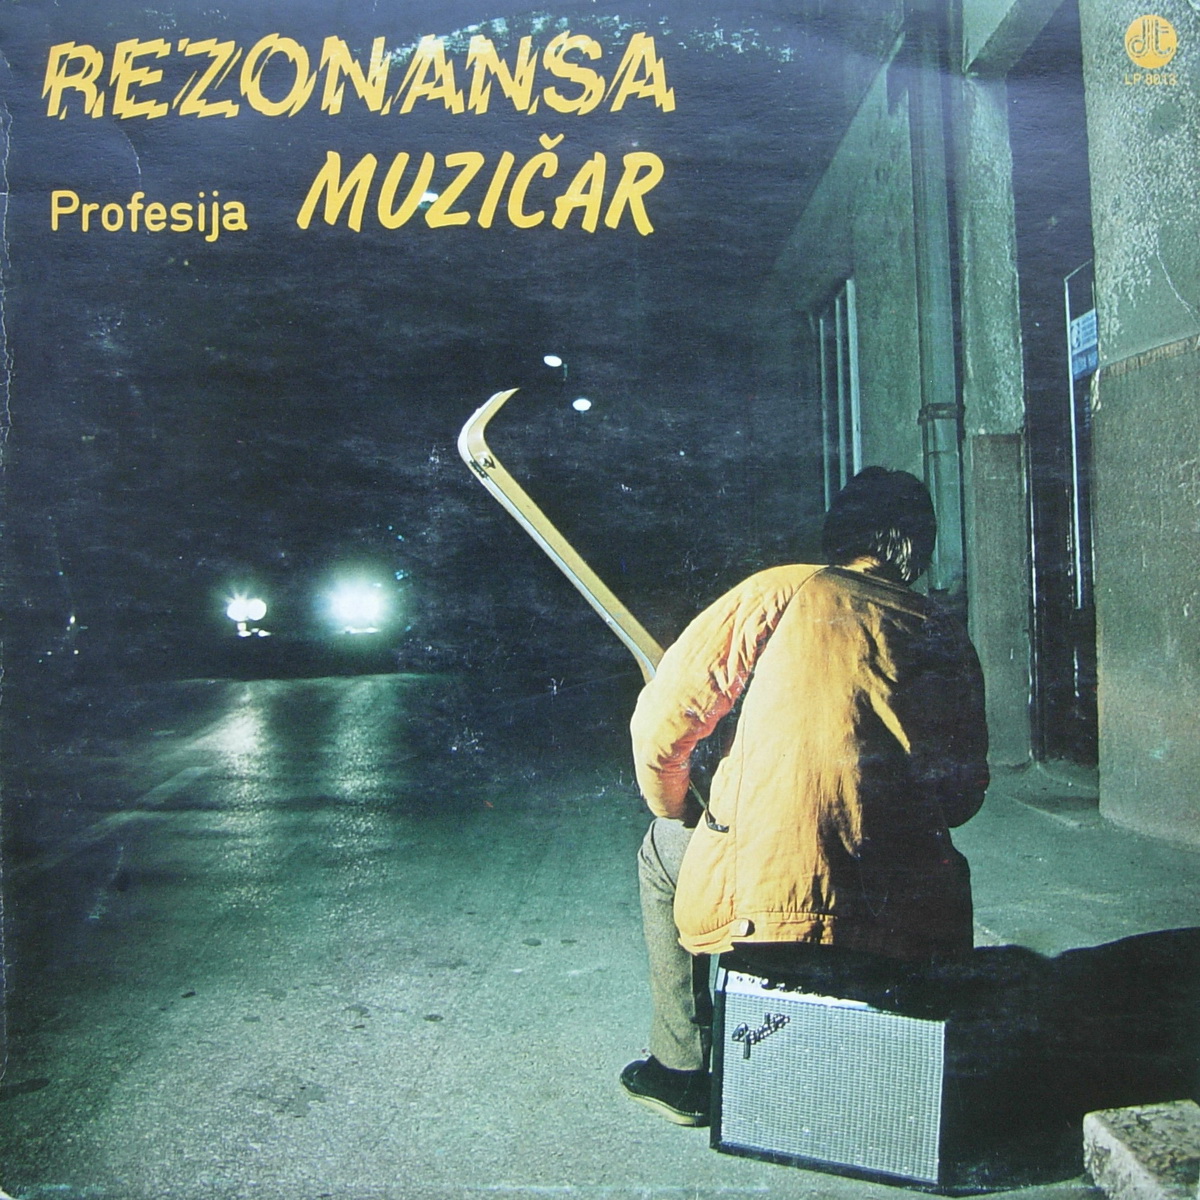 Rezonansa 1981 Profesija muzicar a